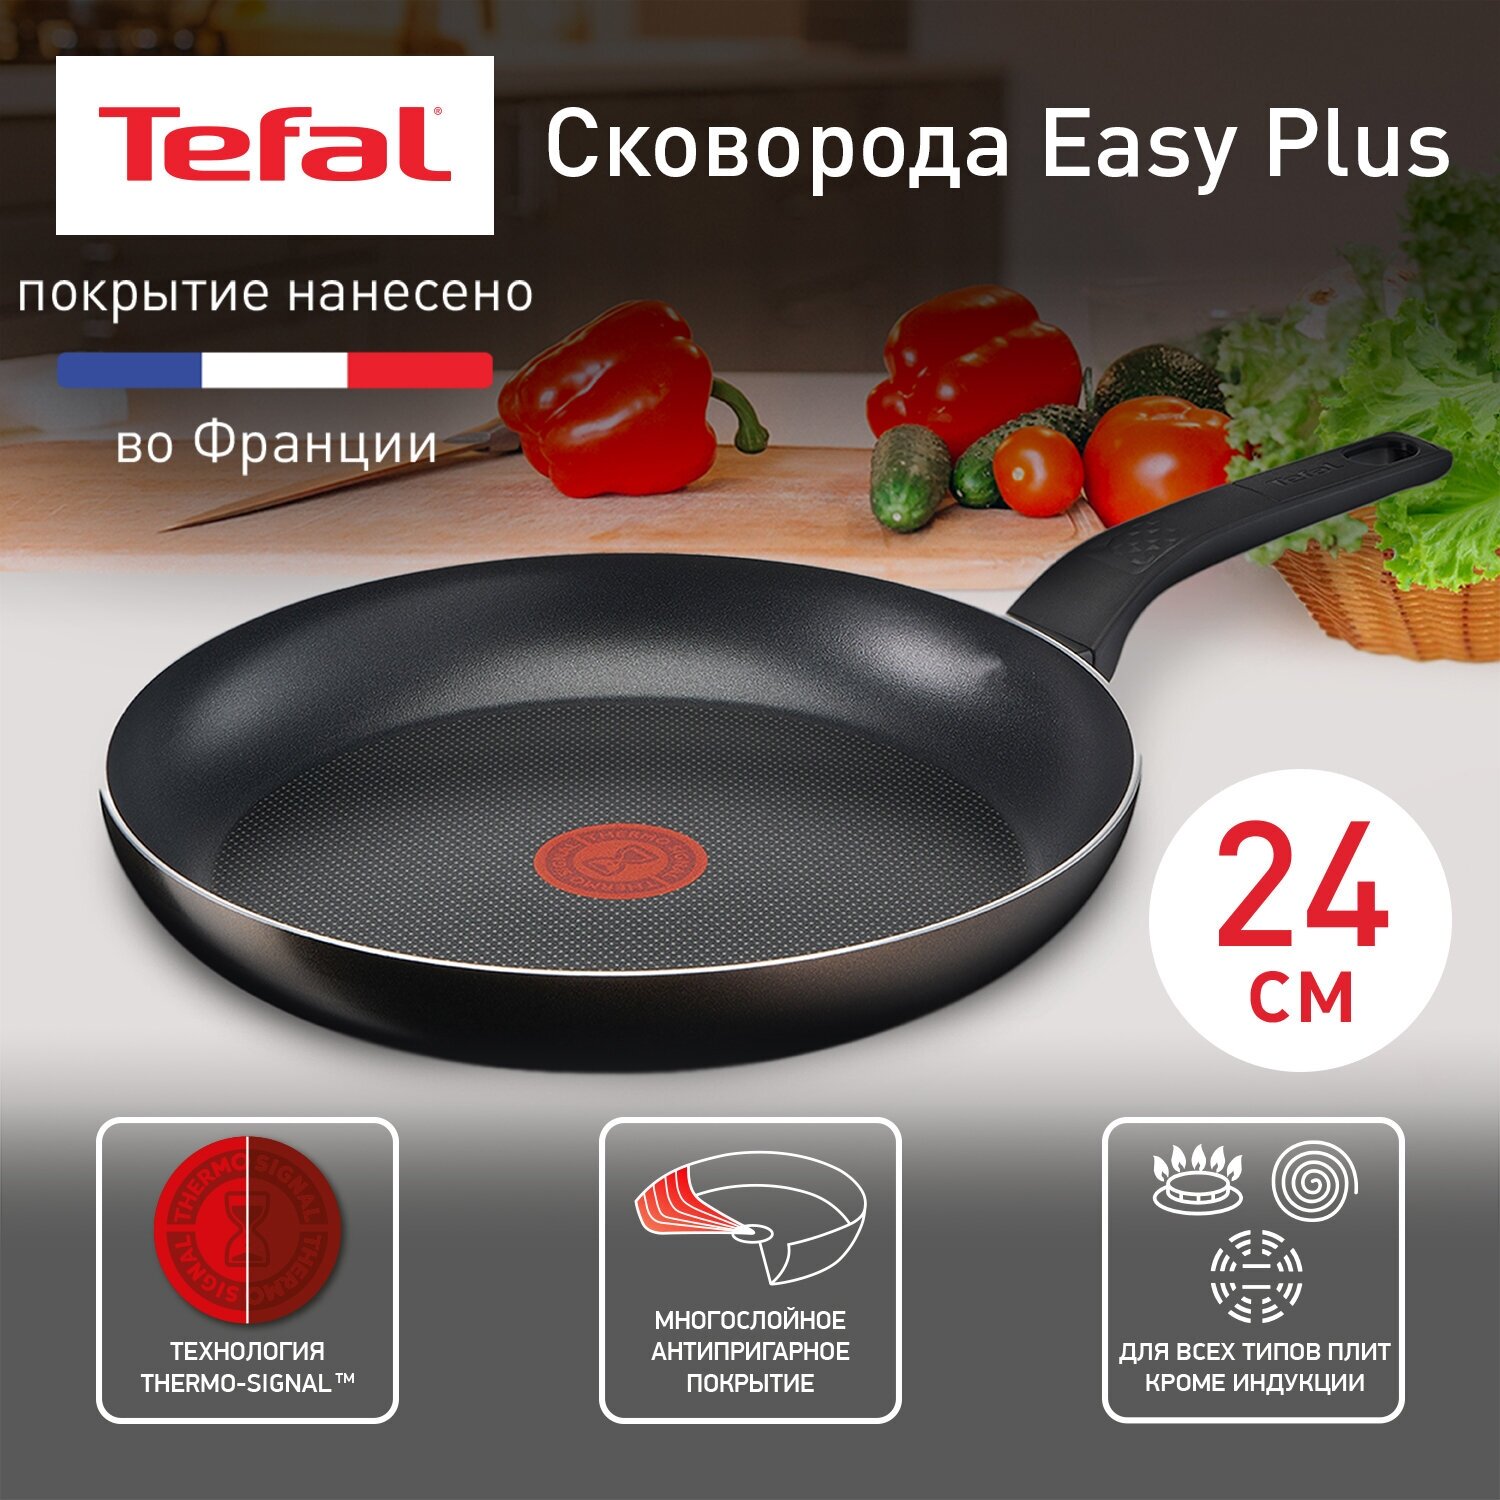 Сковорода Tefal Easy Plus 04206124, диаметр 24 см, с индикатором температуры, с антипригарным покрытием, для газовых, электрических плит